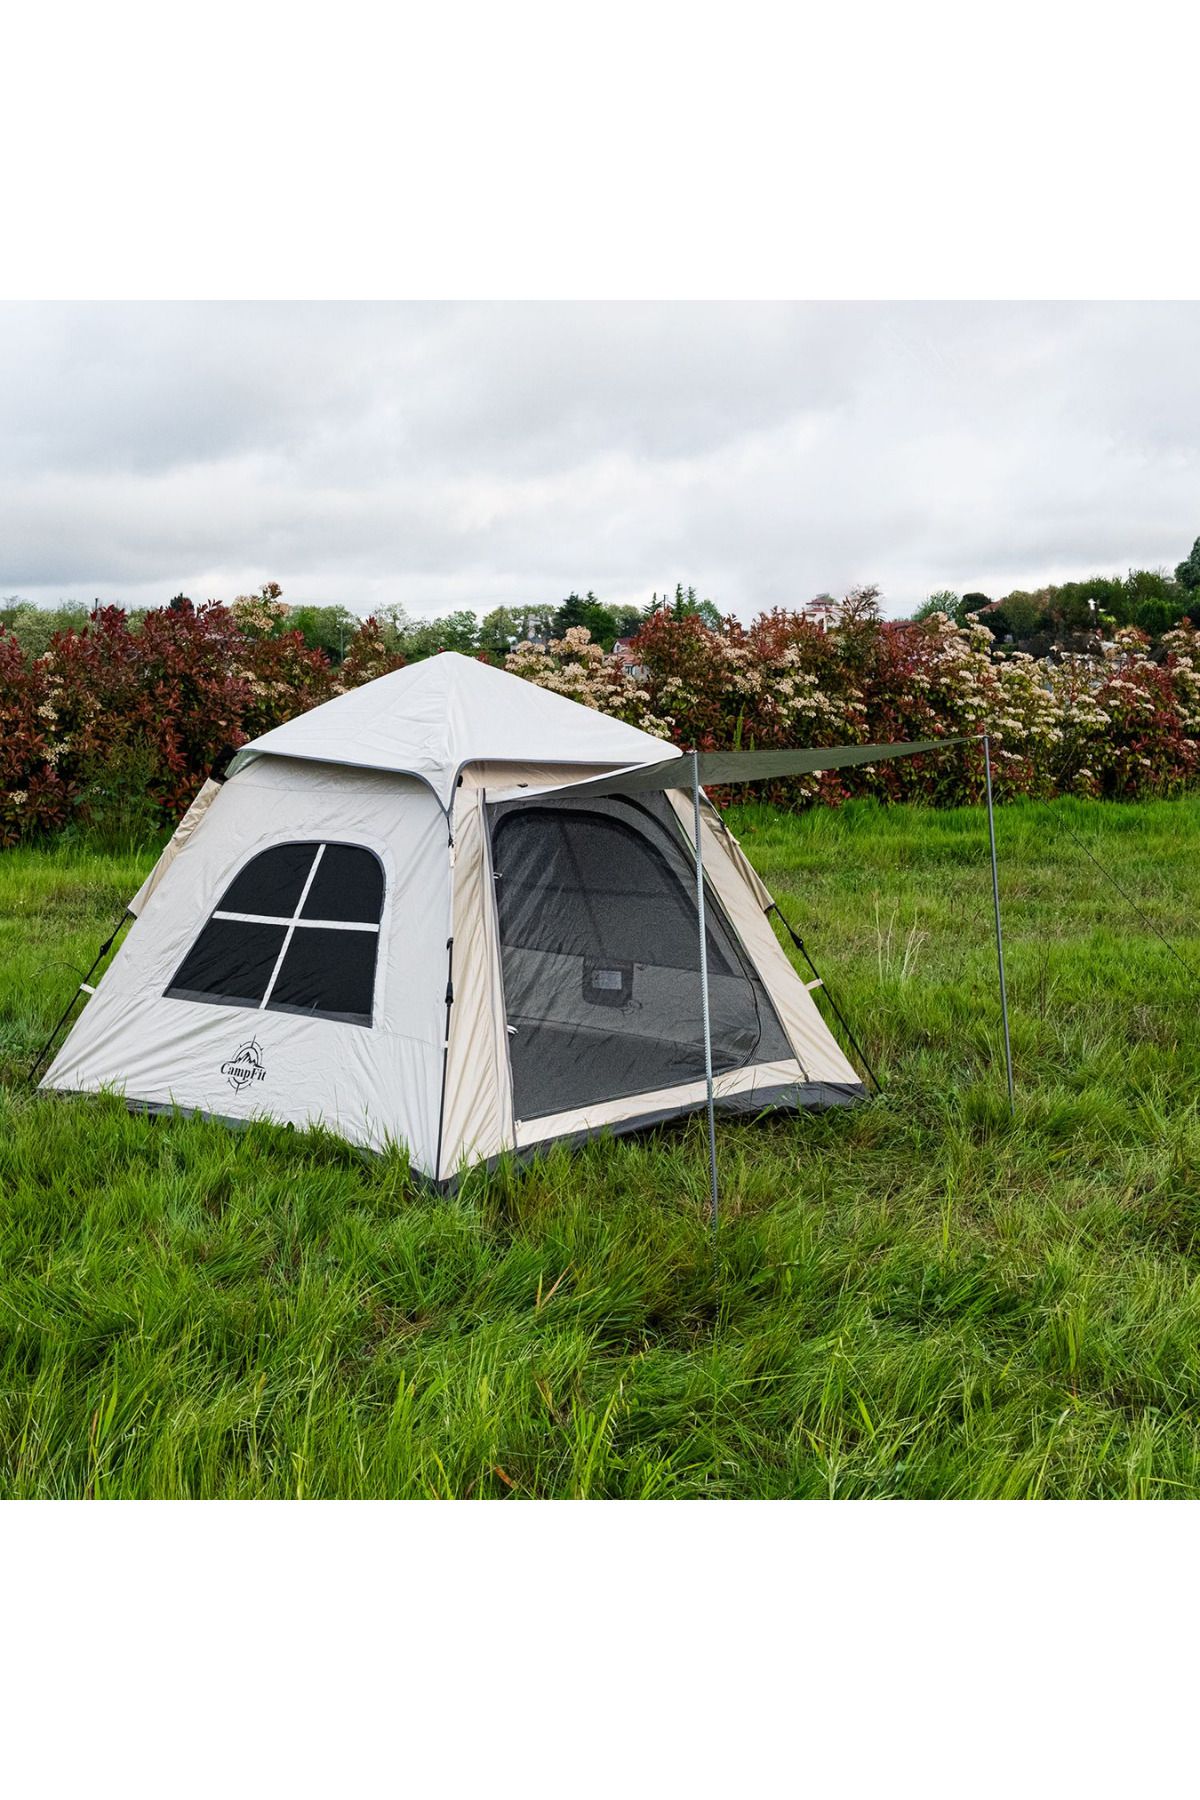 welcomein Campfit 4-5 Kişilik Tam Otomatik Kurulum Kamp Çadırı 240x240x170cm